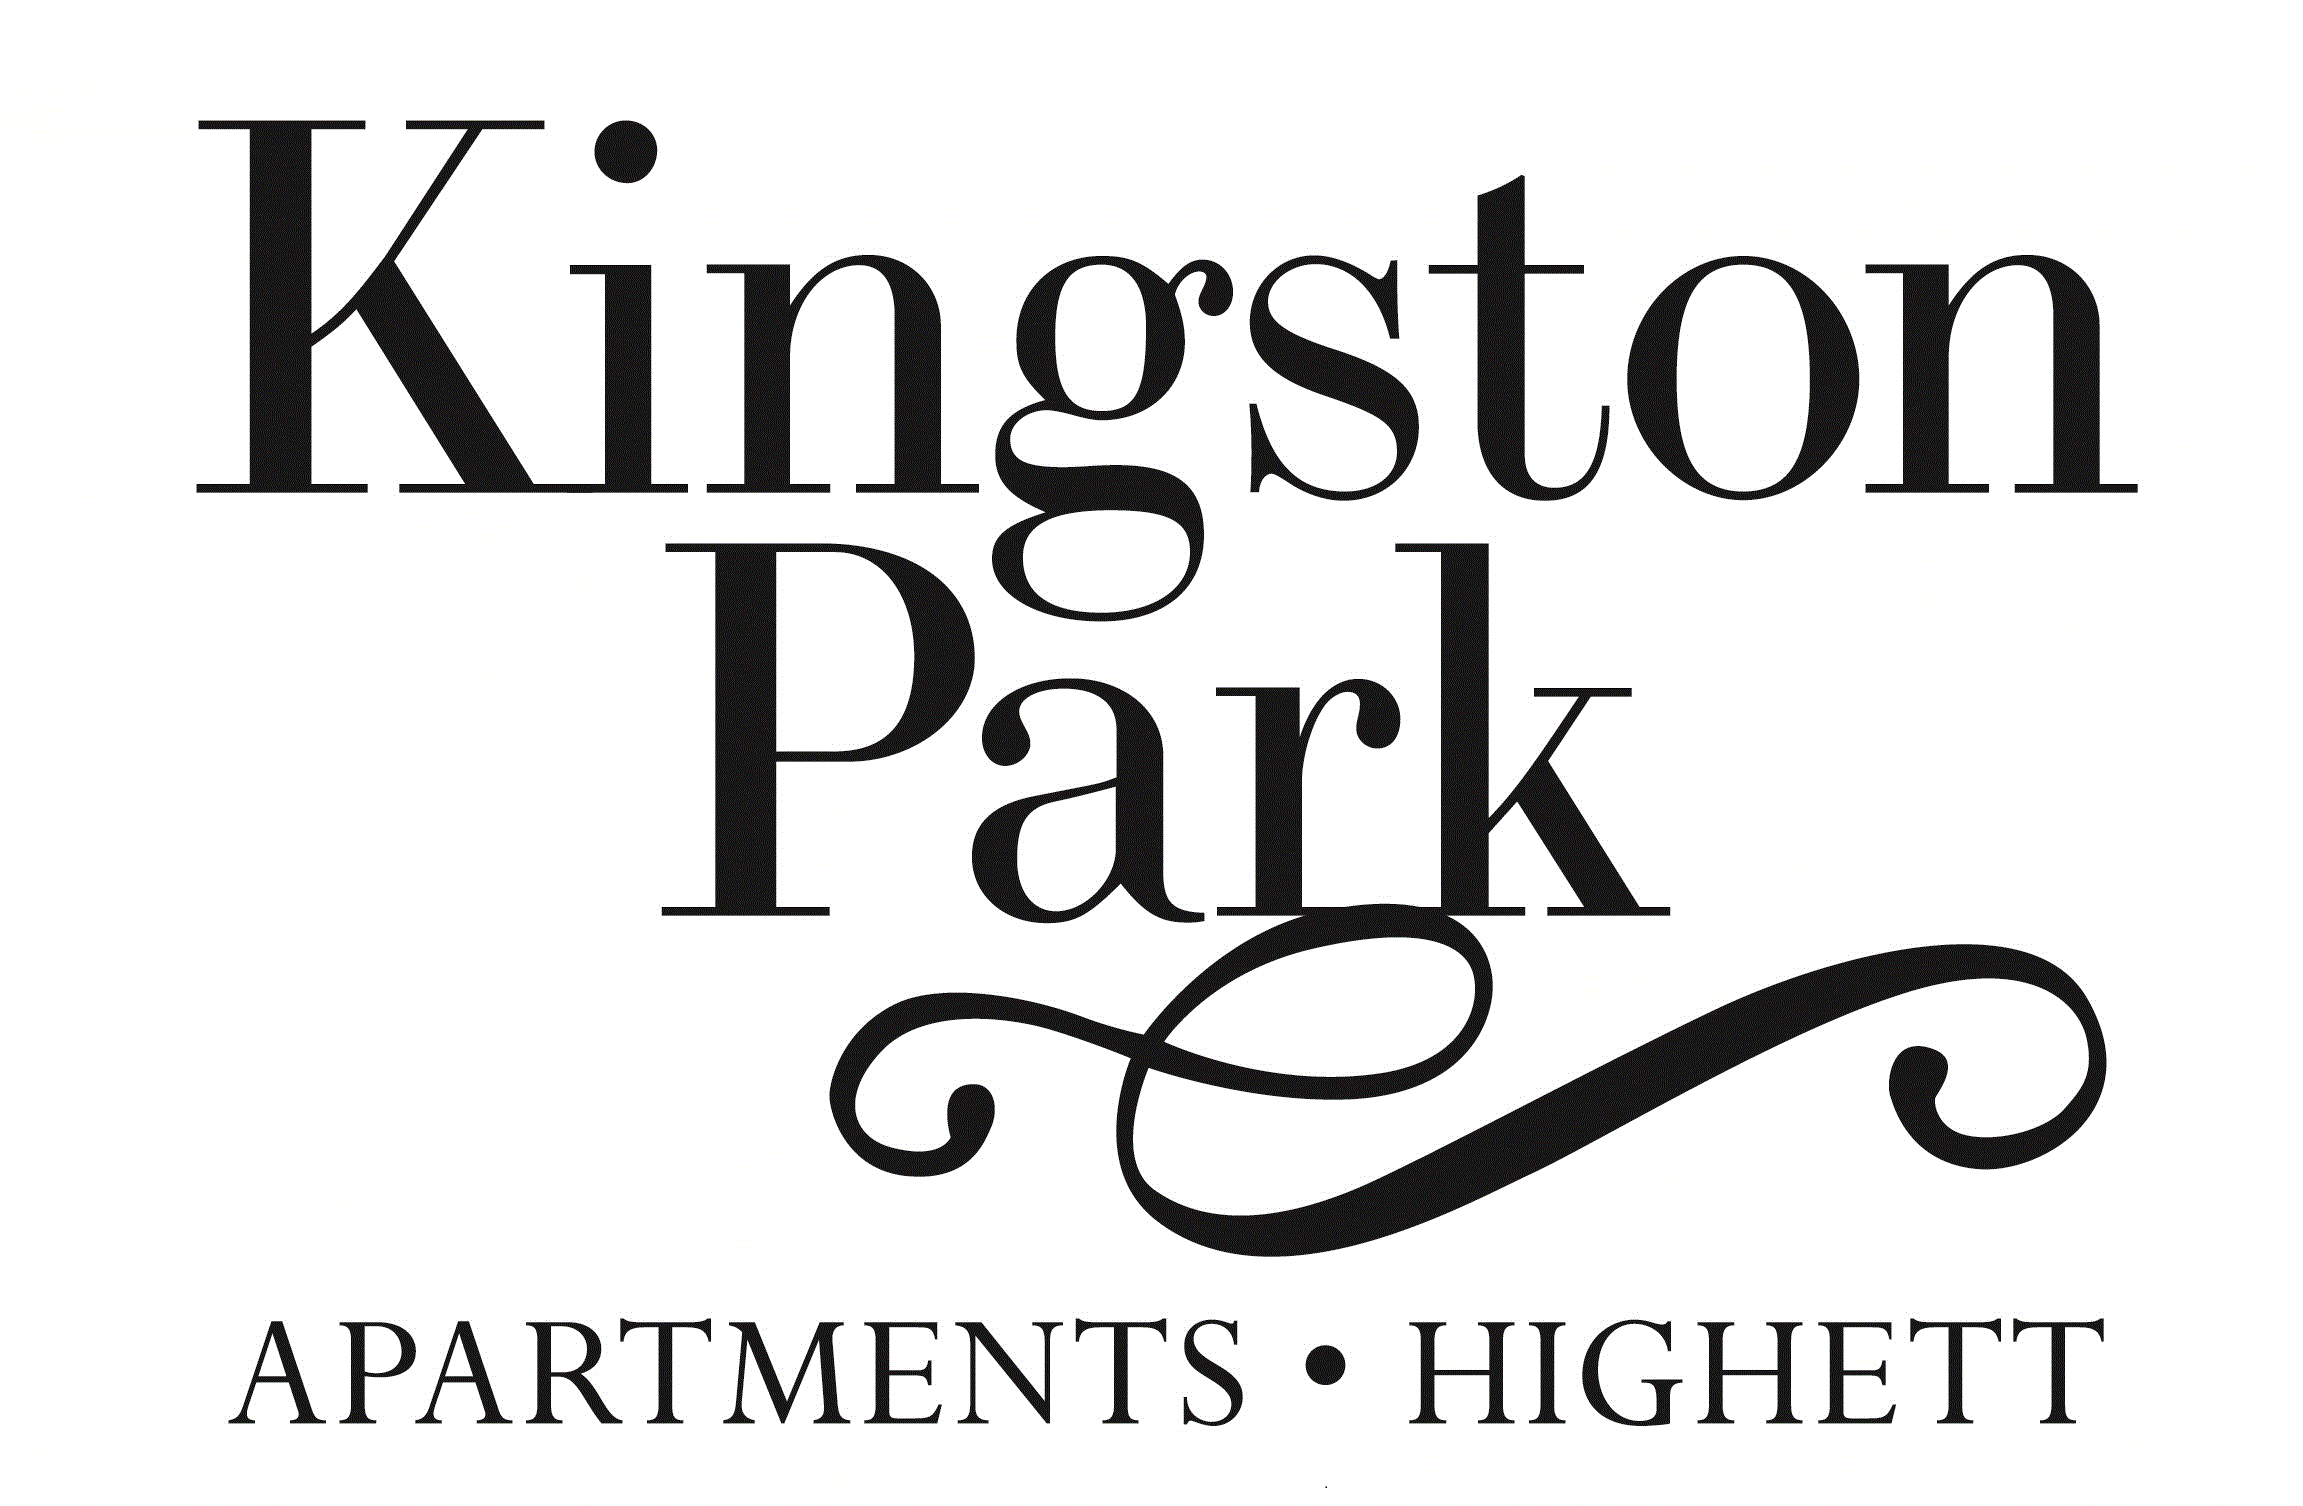 Tải mẫu logo Kingston file vector AI, EPS, JPEG, SVG, PNG